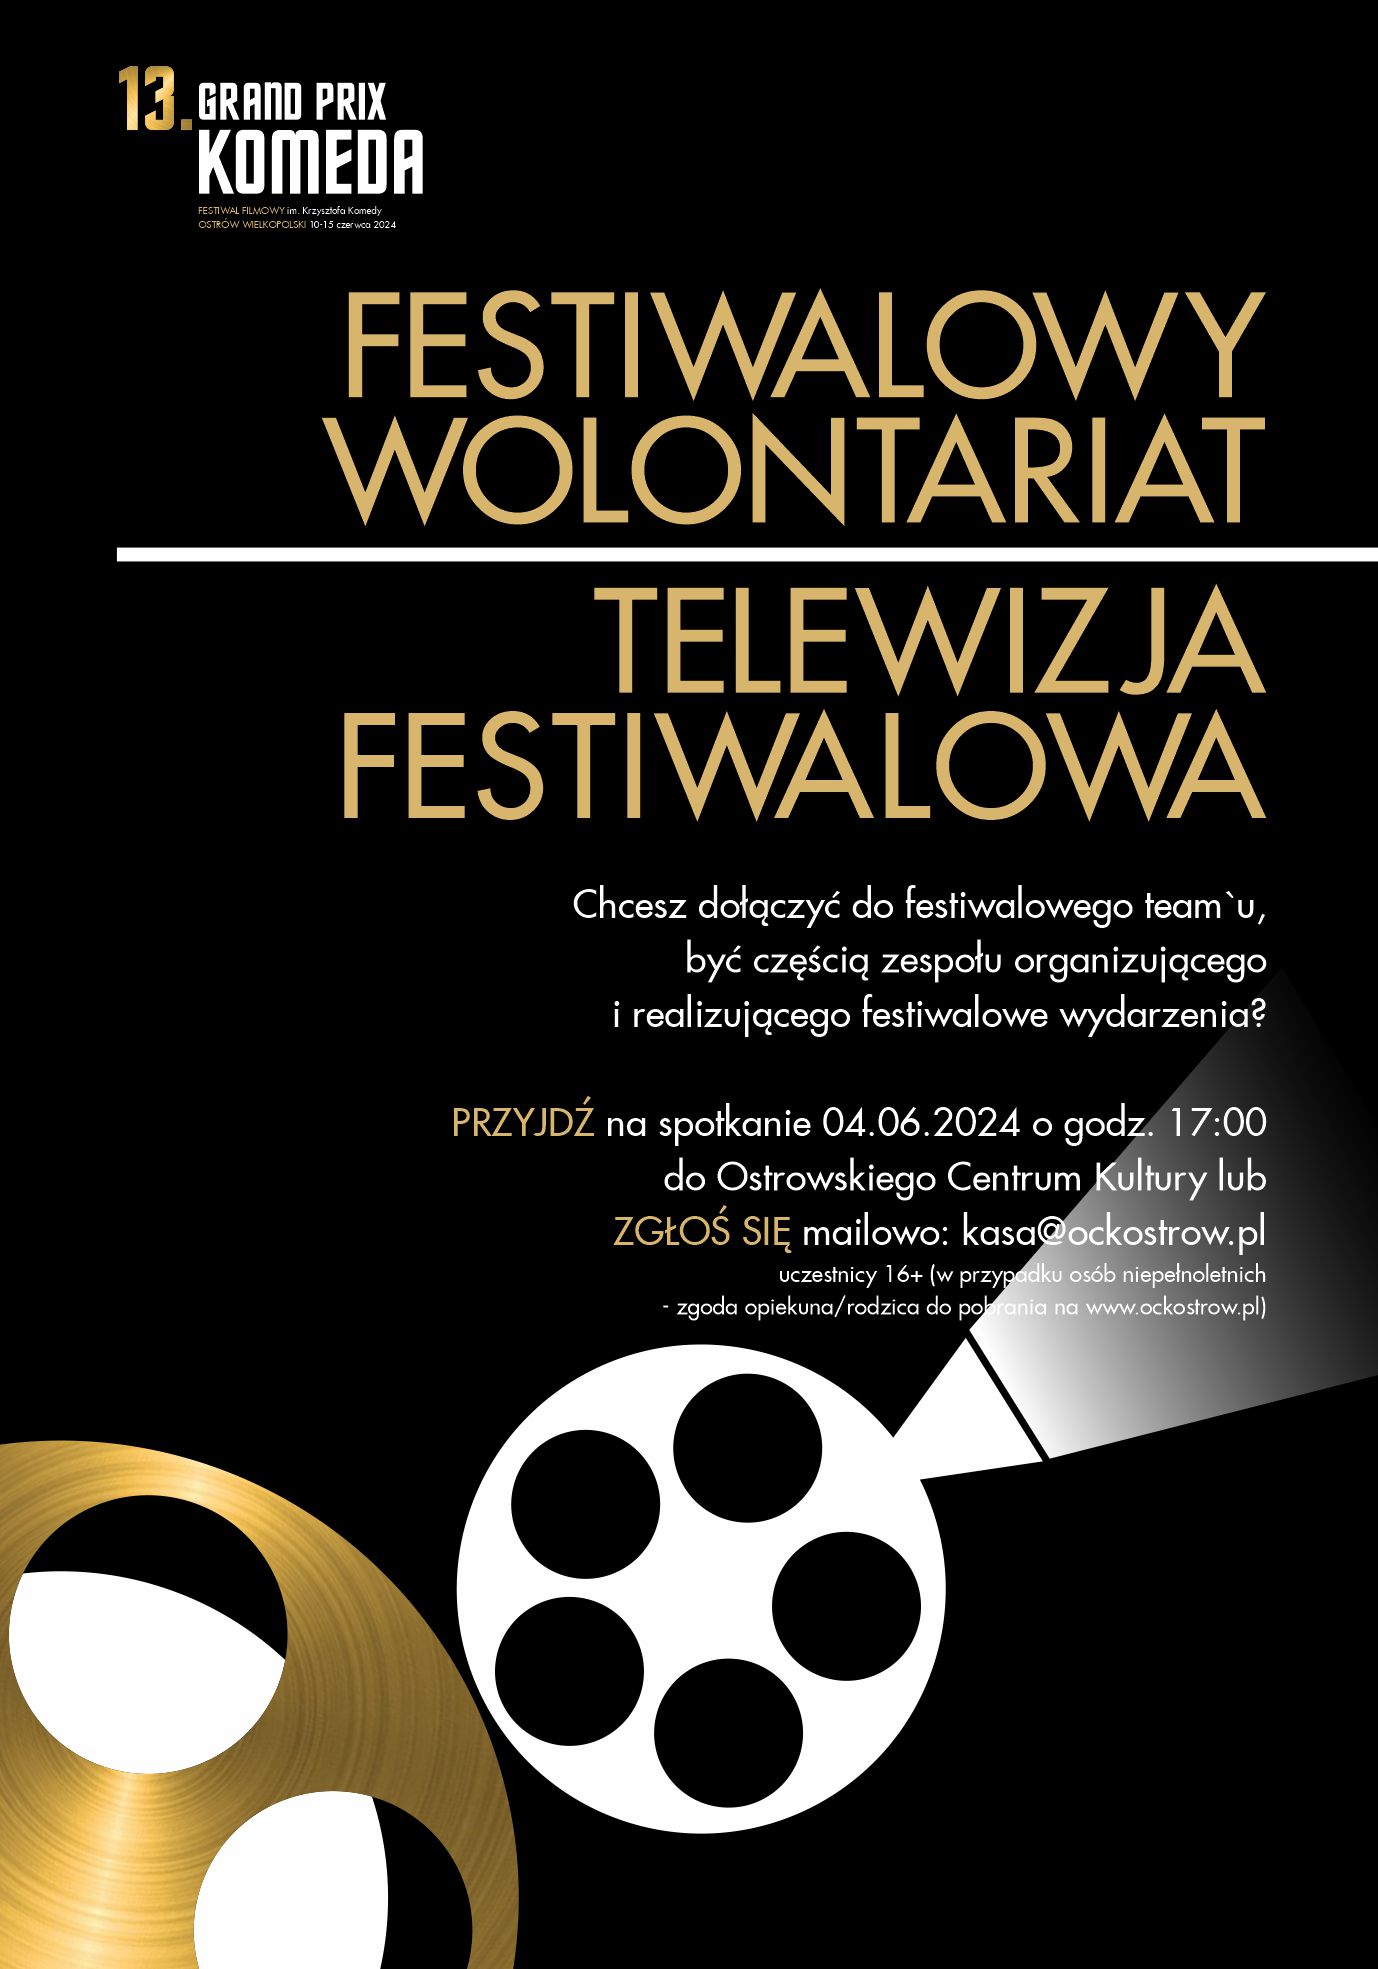 13. GPK | Festiwalowy wolontariat / Telewizja festiwalowa